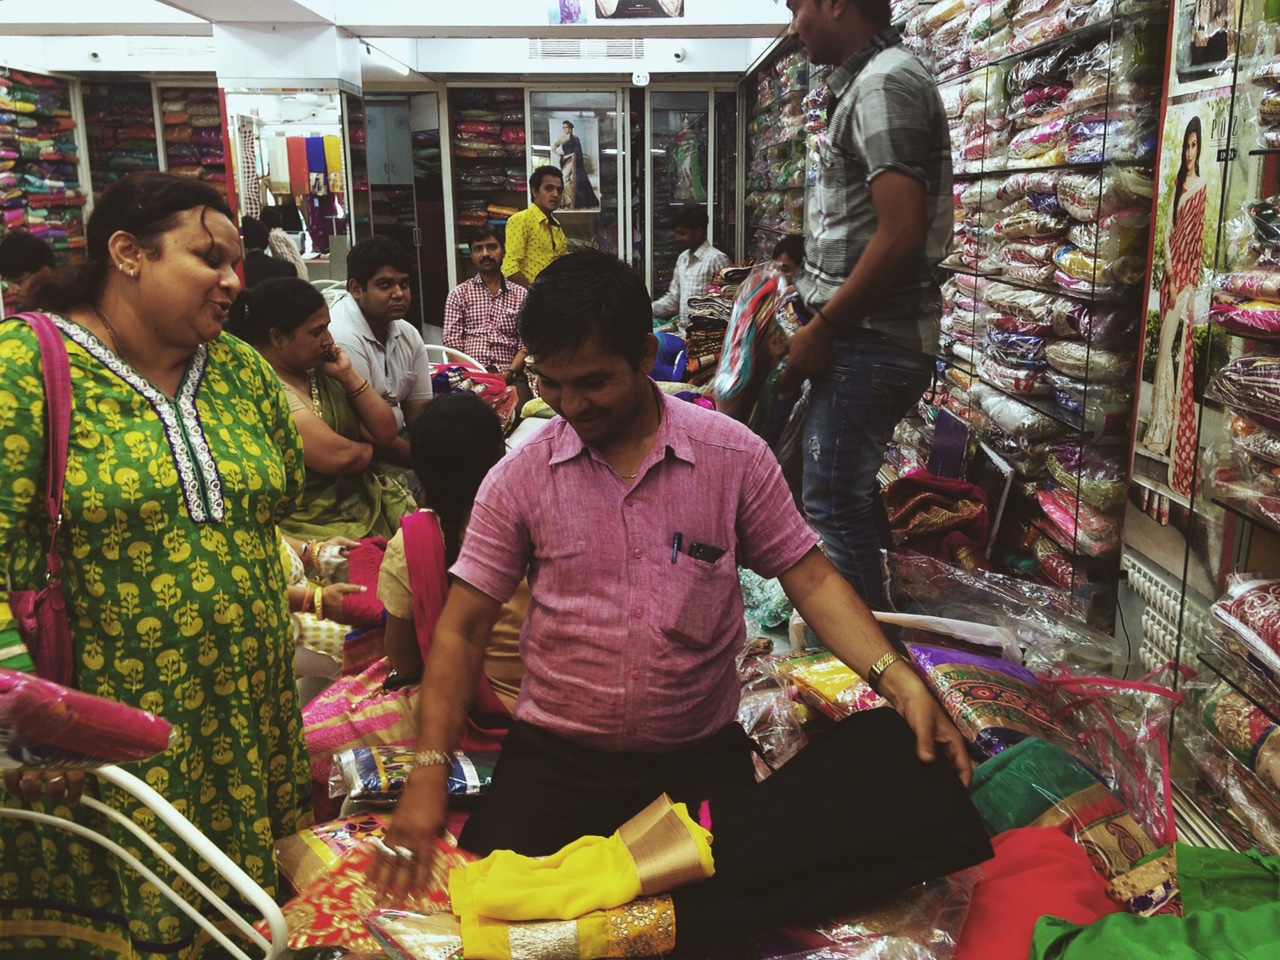 인도의 전통의상 사리(Sari)가게 풍경. 마치 한복 가게를 연상케한다. 우리는 1000루피에 (한화 17000원 정도) 아주 저렴한 가격으로 구입했다. 